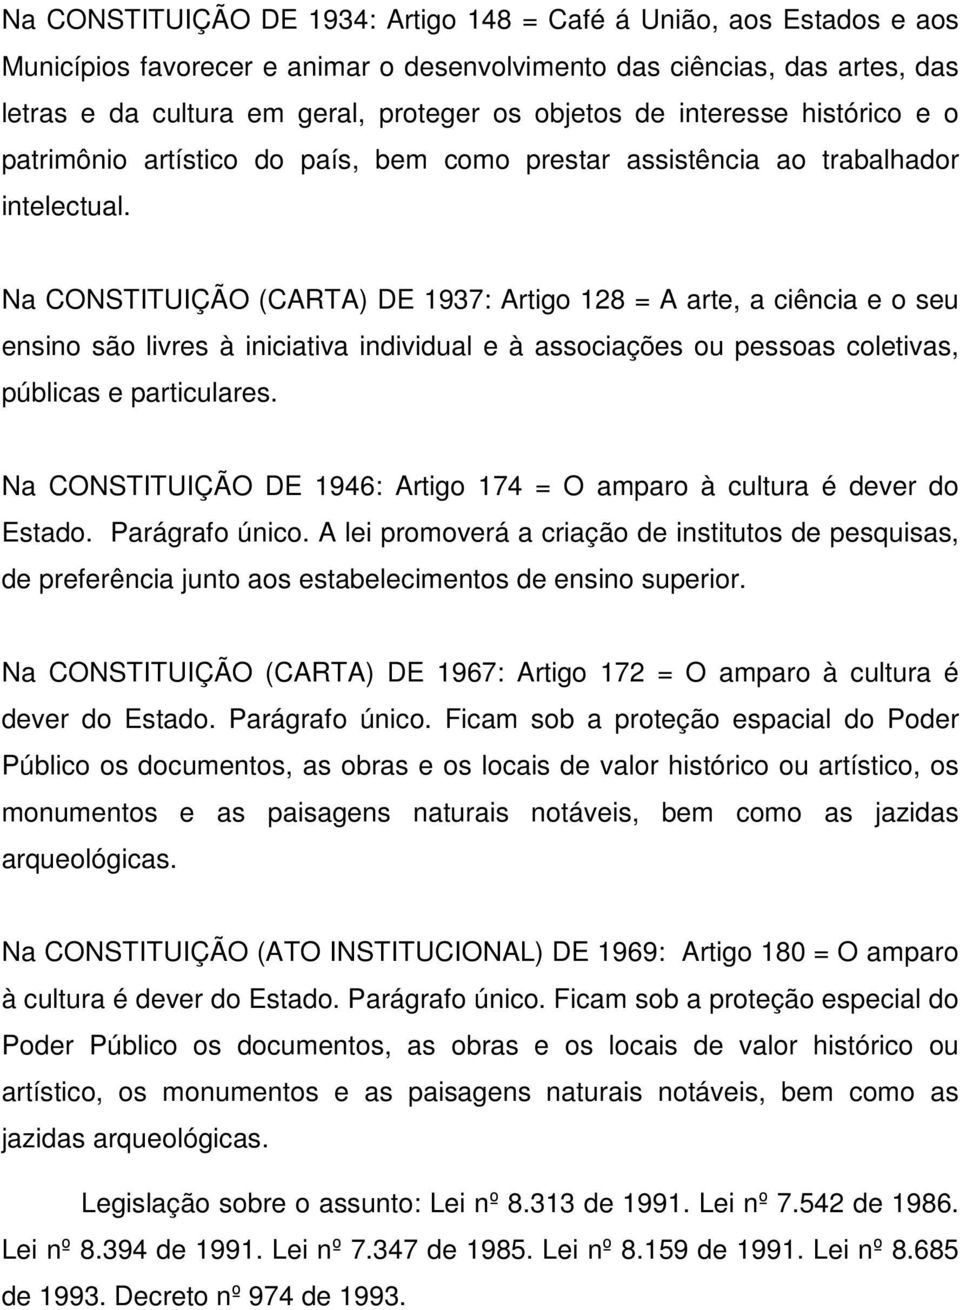 Na CONSTITUIÇÃO (CARTA) DE 1937: Artigo 128 = A arte, a ciência e o seu ensino são livres à iniciativa individual e à associações ou pessoas coletivas, públicas e particulares.